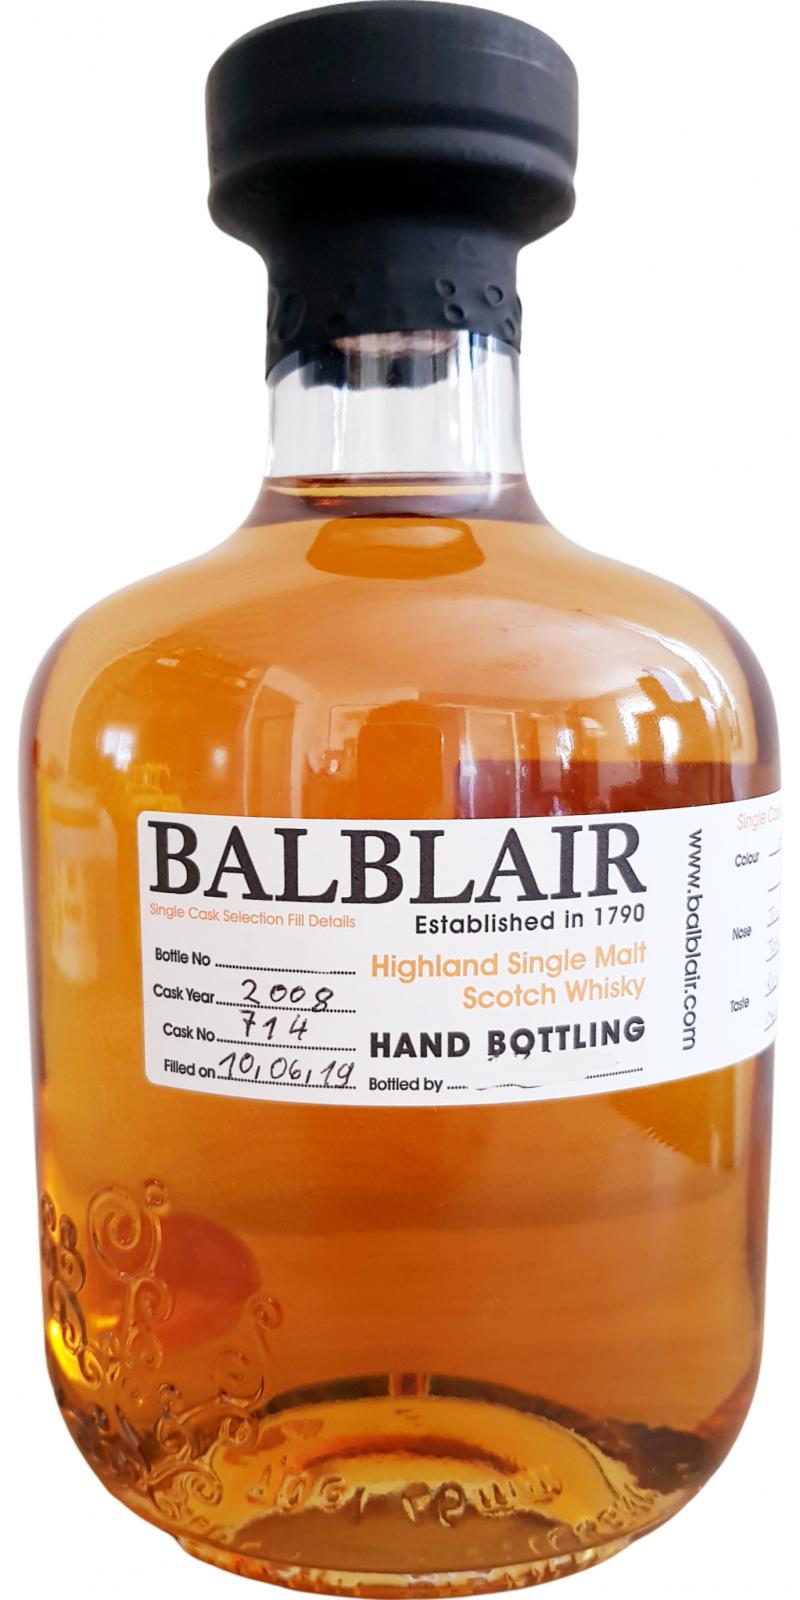 Balblair 2008 Hand Bottling Bourbon Cask #714 61.9% 700ml